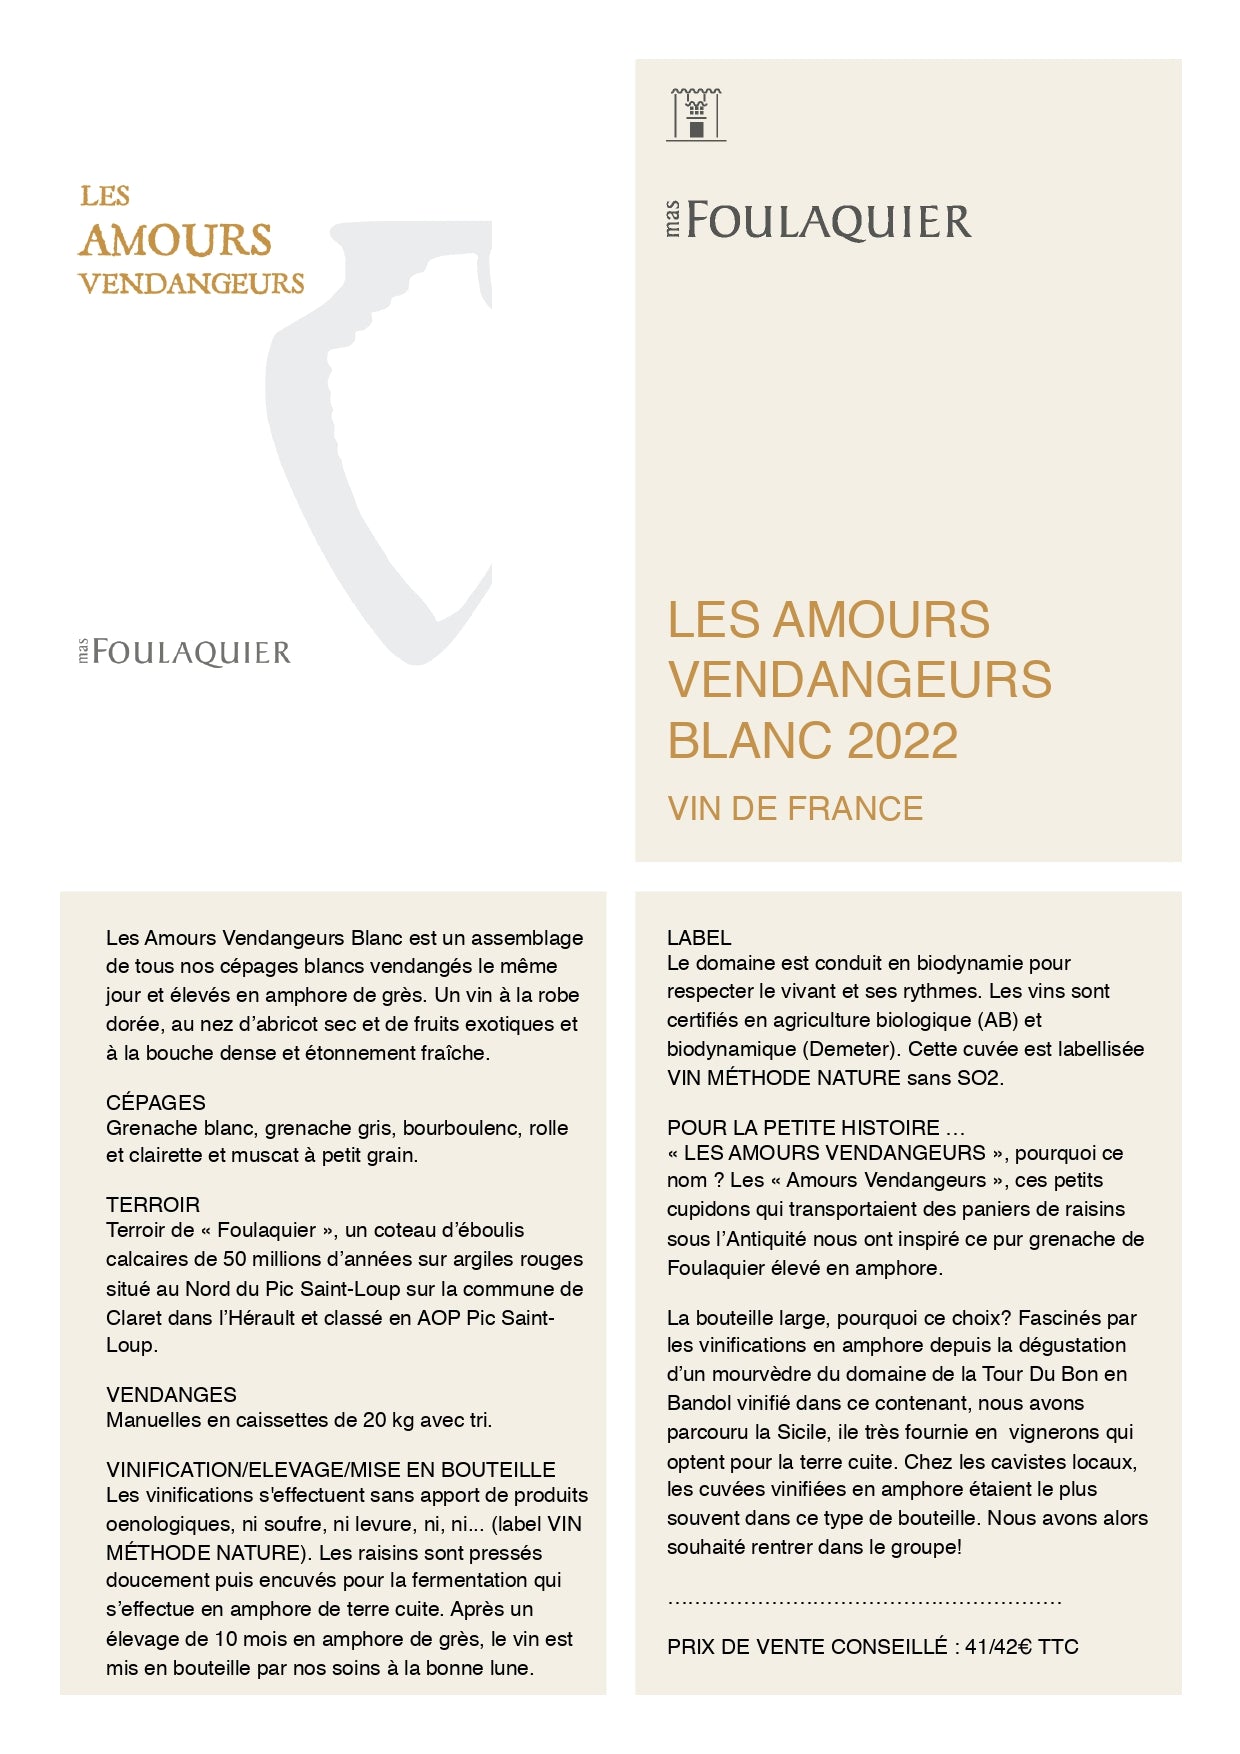 Les Amours Vendangeurs Blanc 2022 - NOUVEAUTÉ